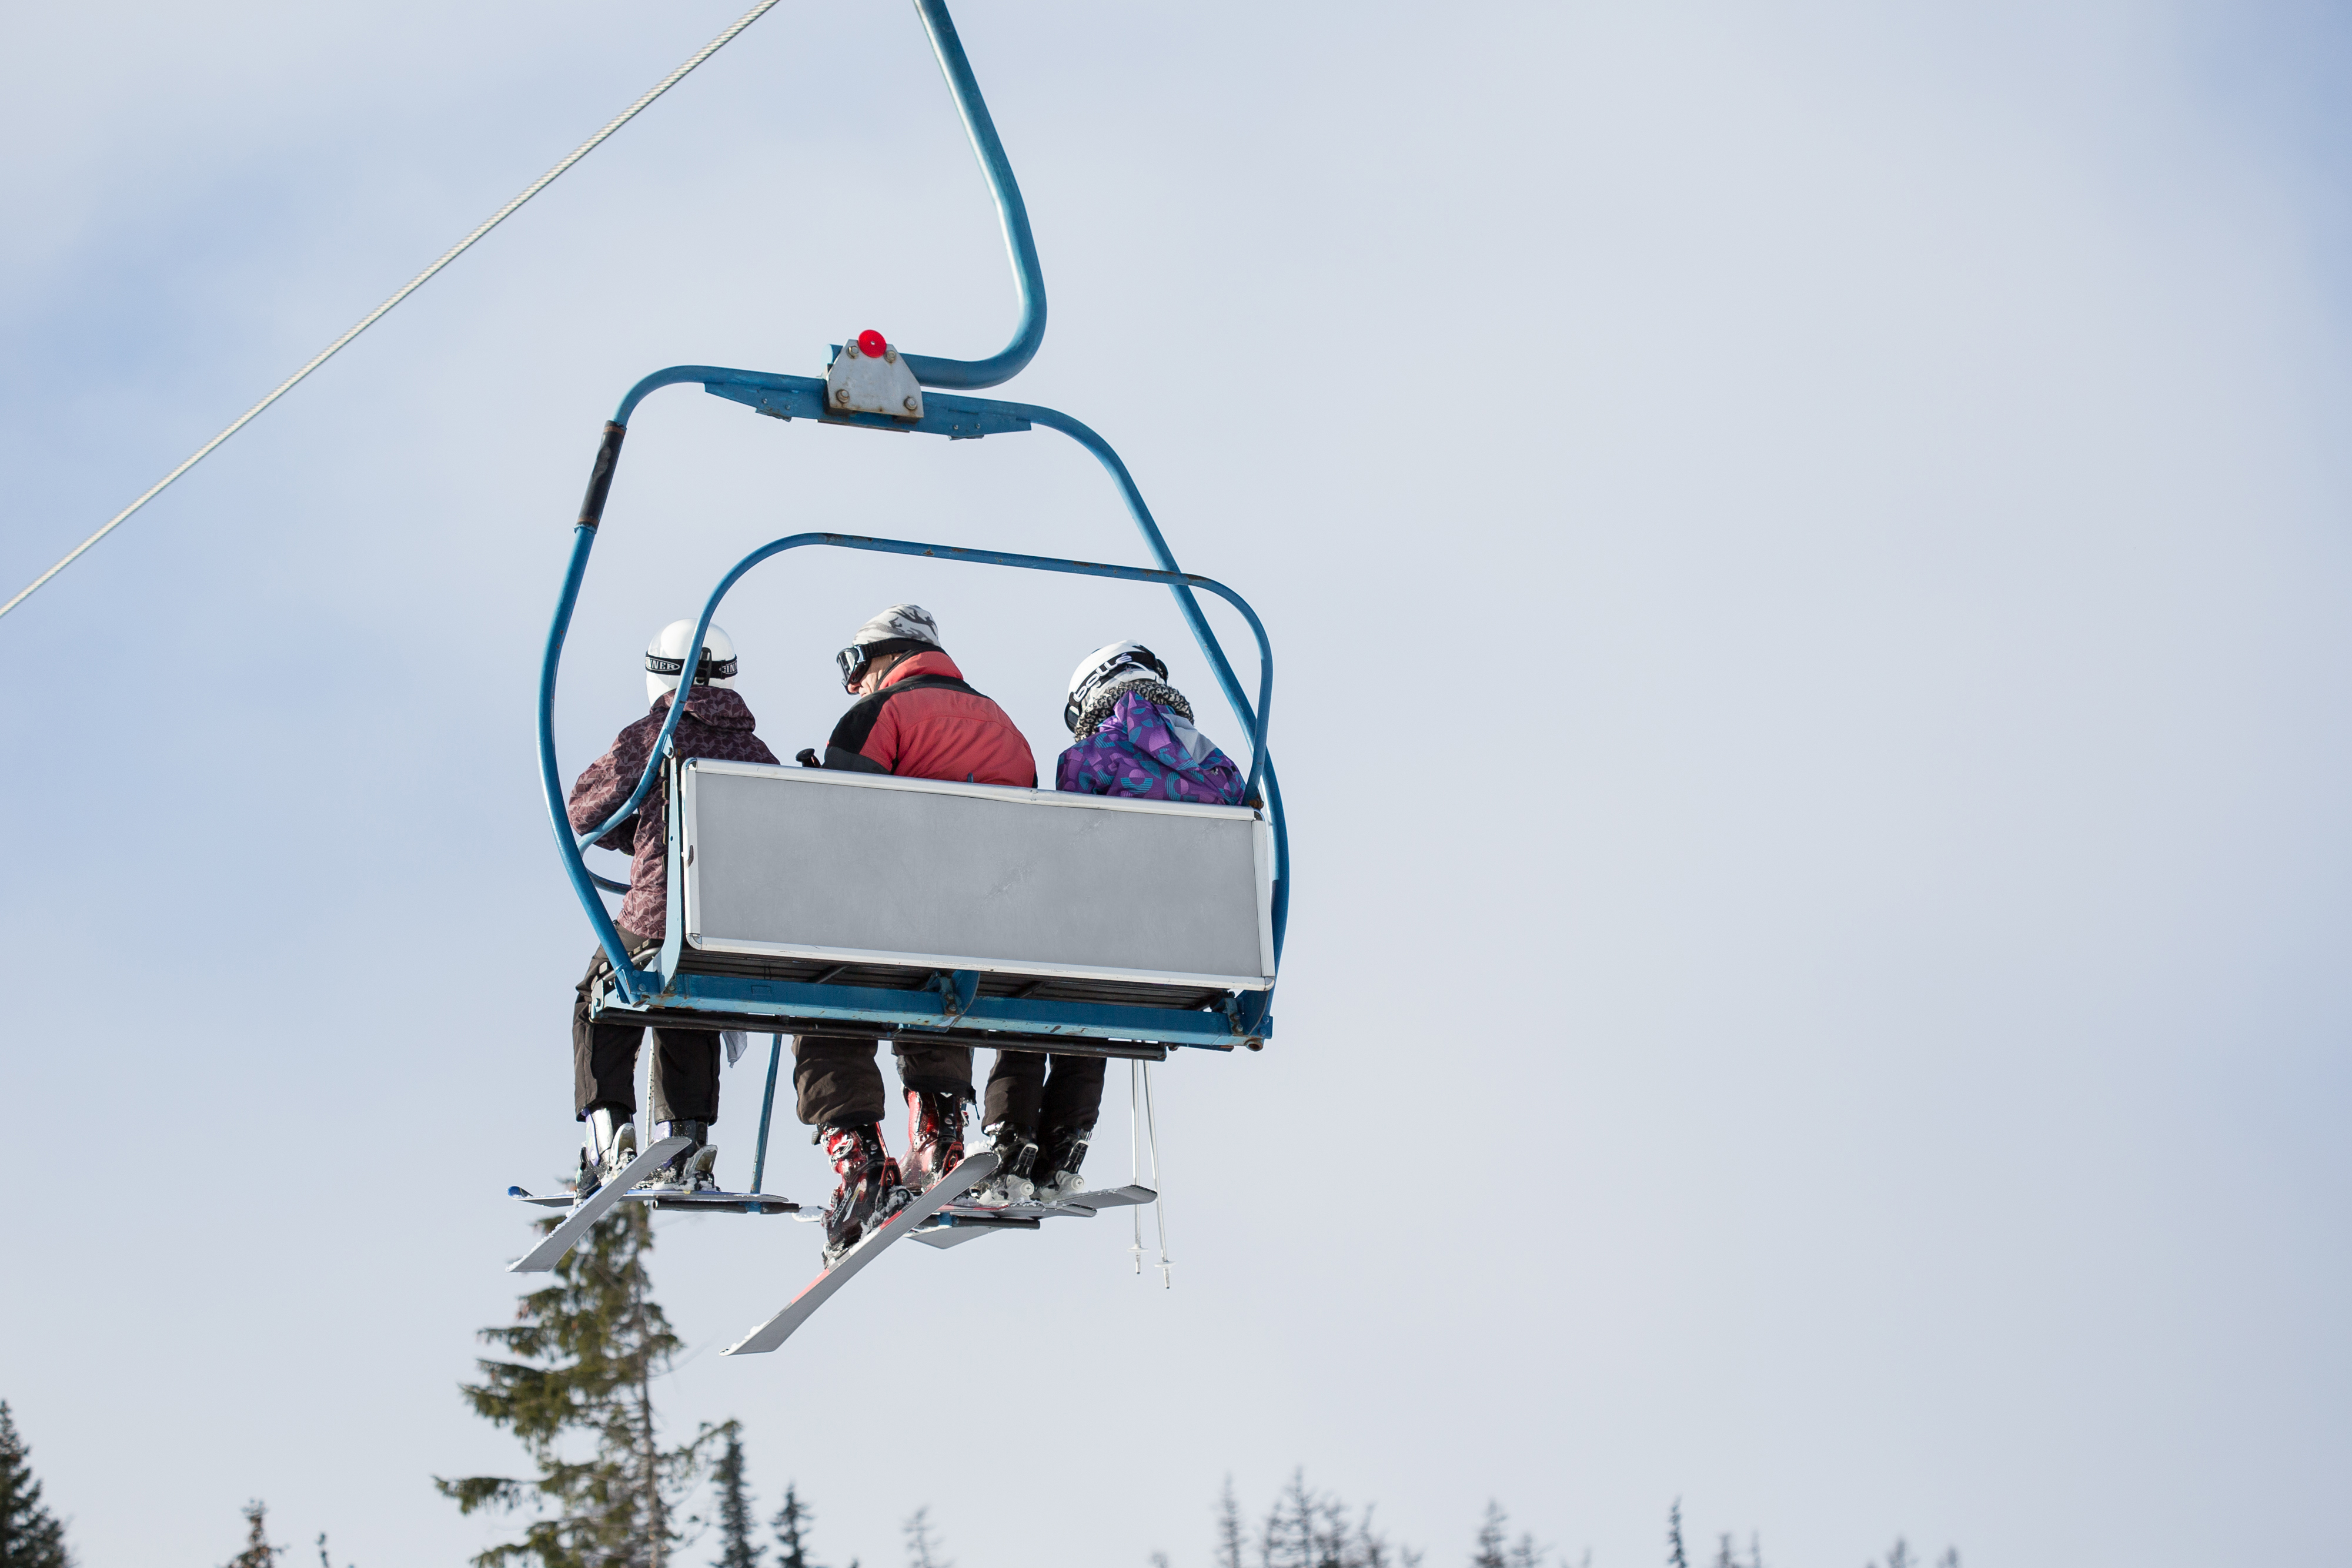 three-skiers-on-ski-lift-picjumbo-com